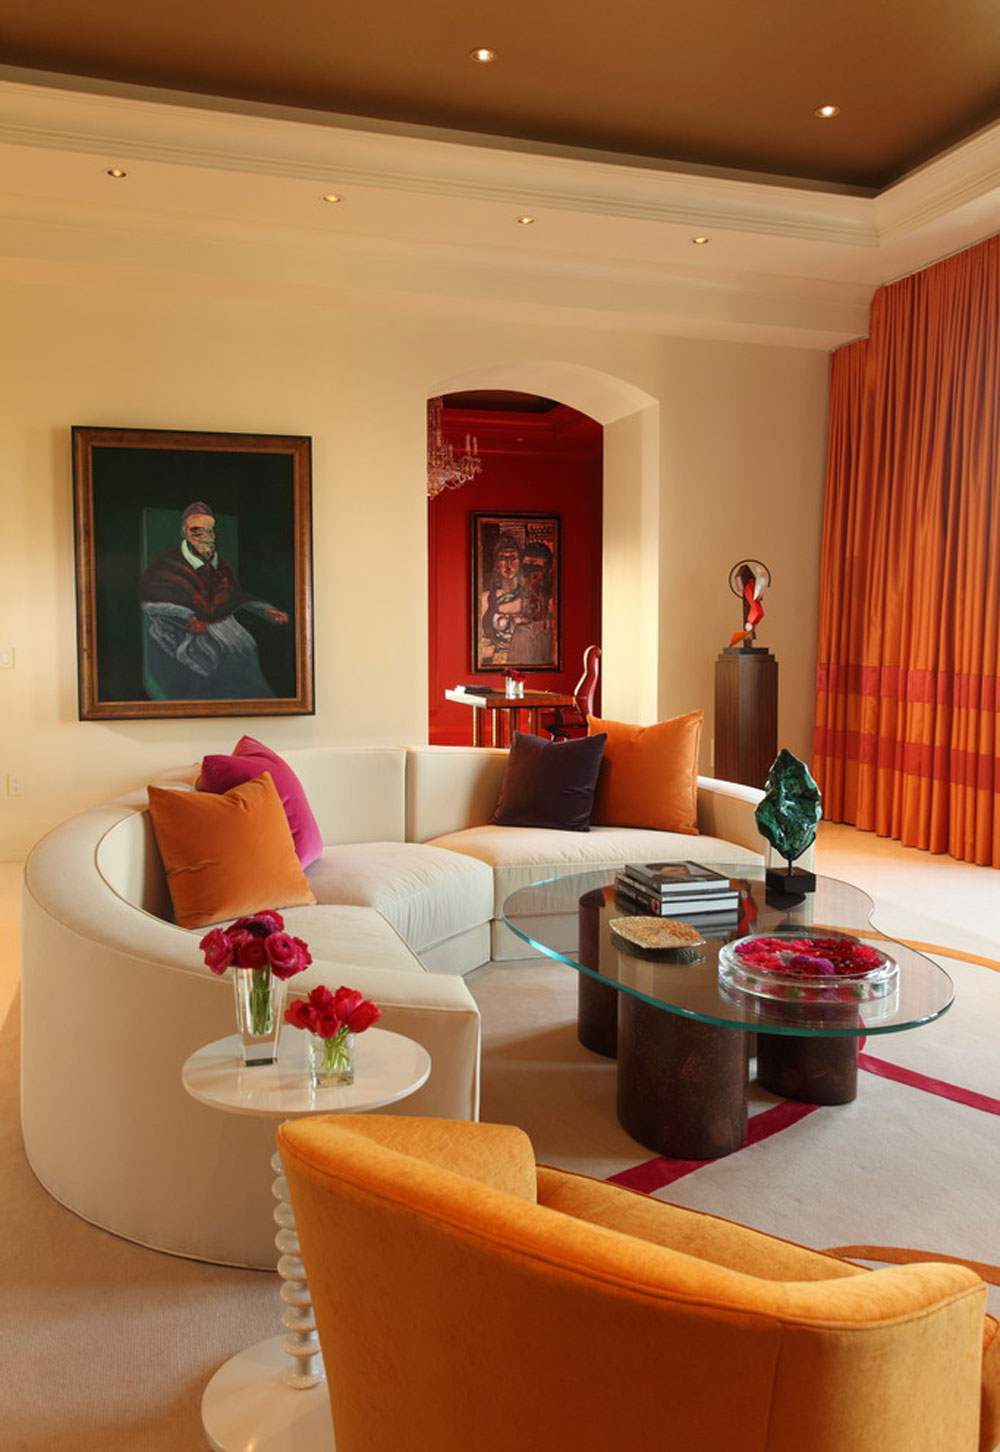 moderne-stue-værelse-for-fred-design ved hjælp af ferskenfarven til at dekorere fantastiske interiører